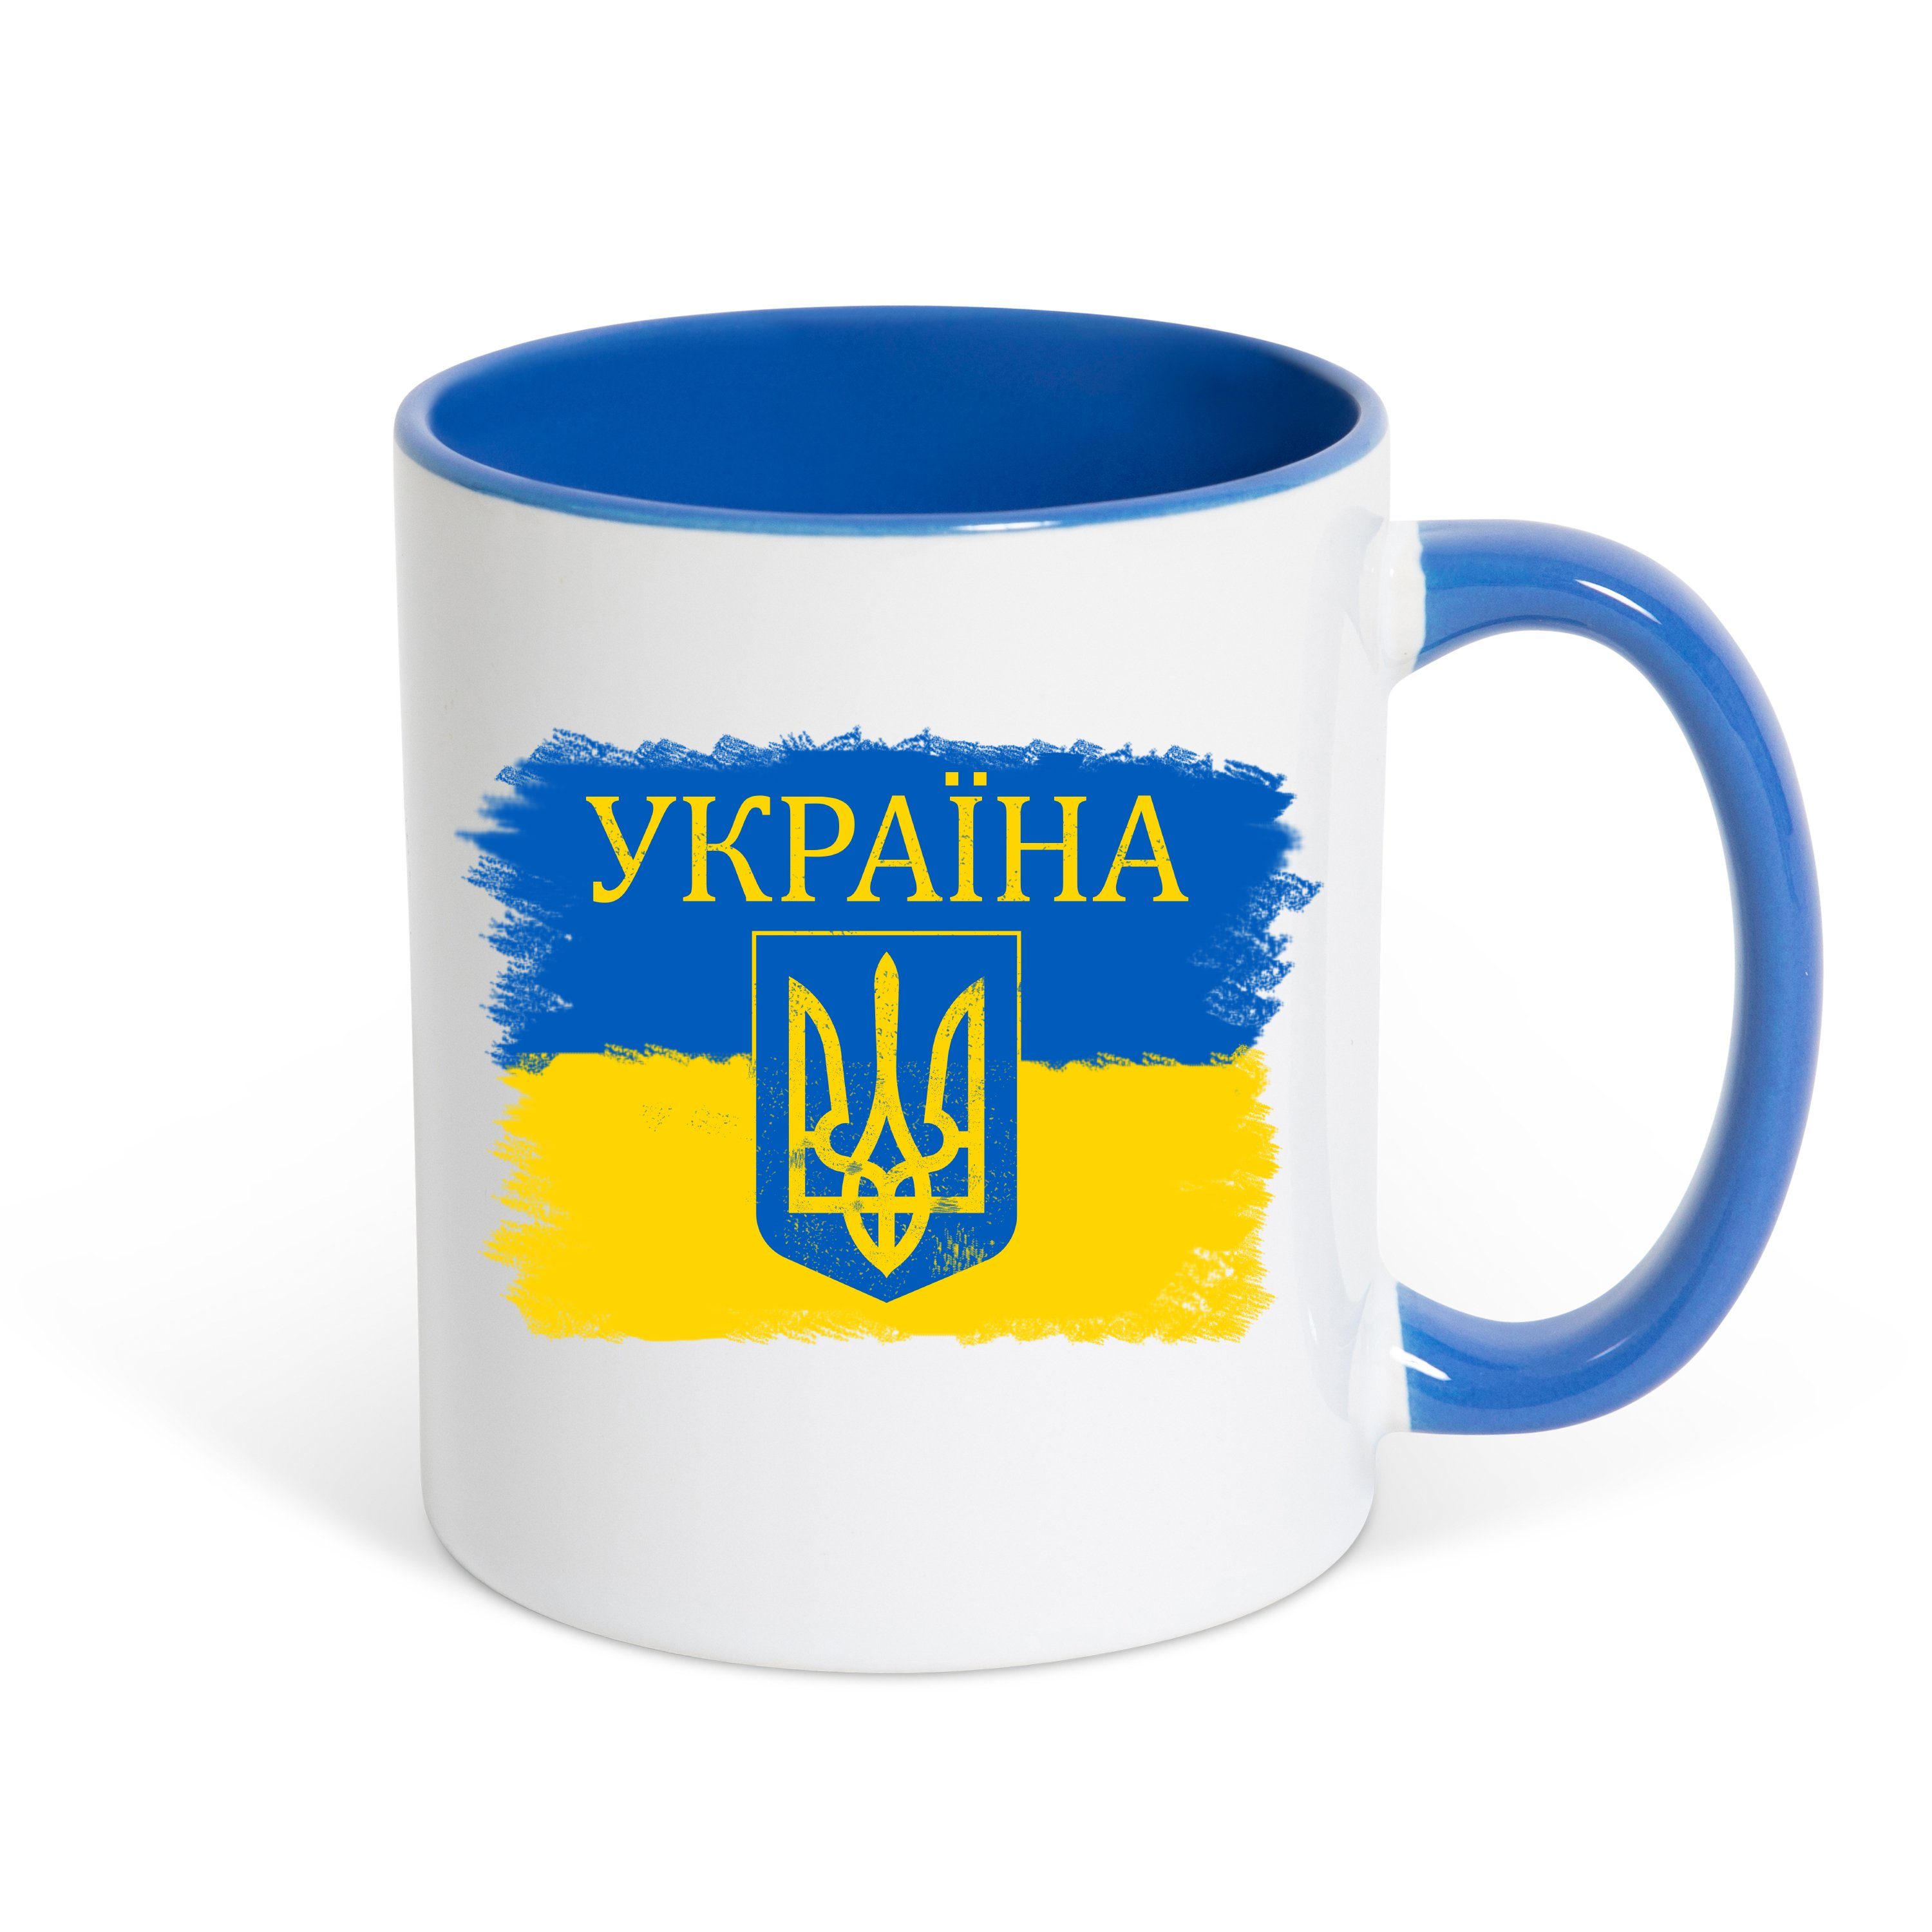 Youth Designz Tasse Vintage Ukraine Kaffeetasse Geschenk, Keramik, mit Flagge und Wappen Vintage Print Weiss/Royal